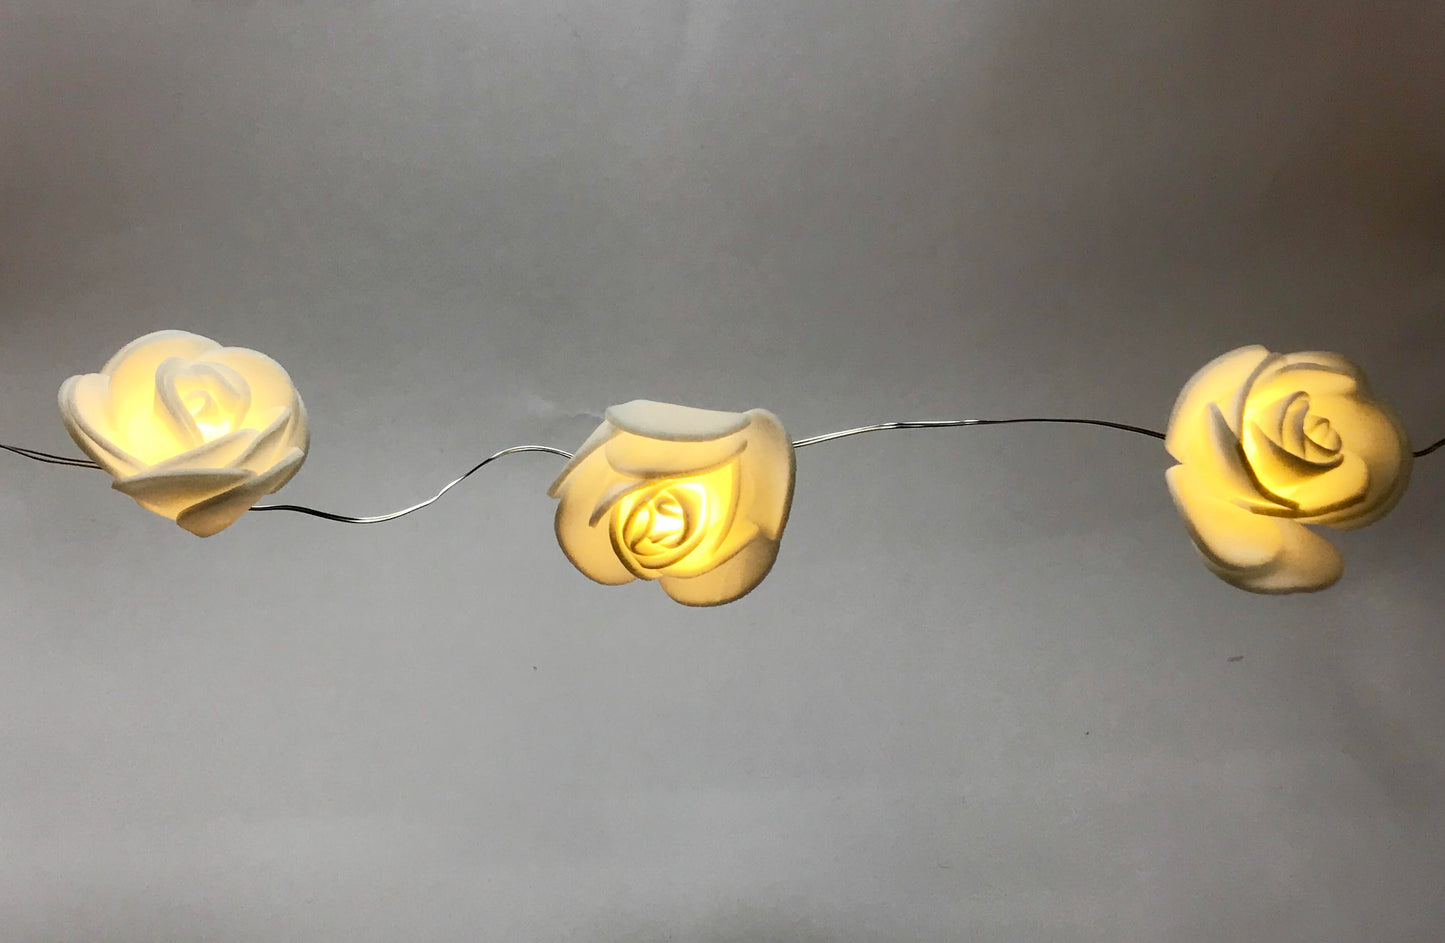 Rose String Light (Warm White, 3 Meters)